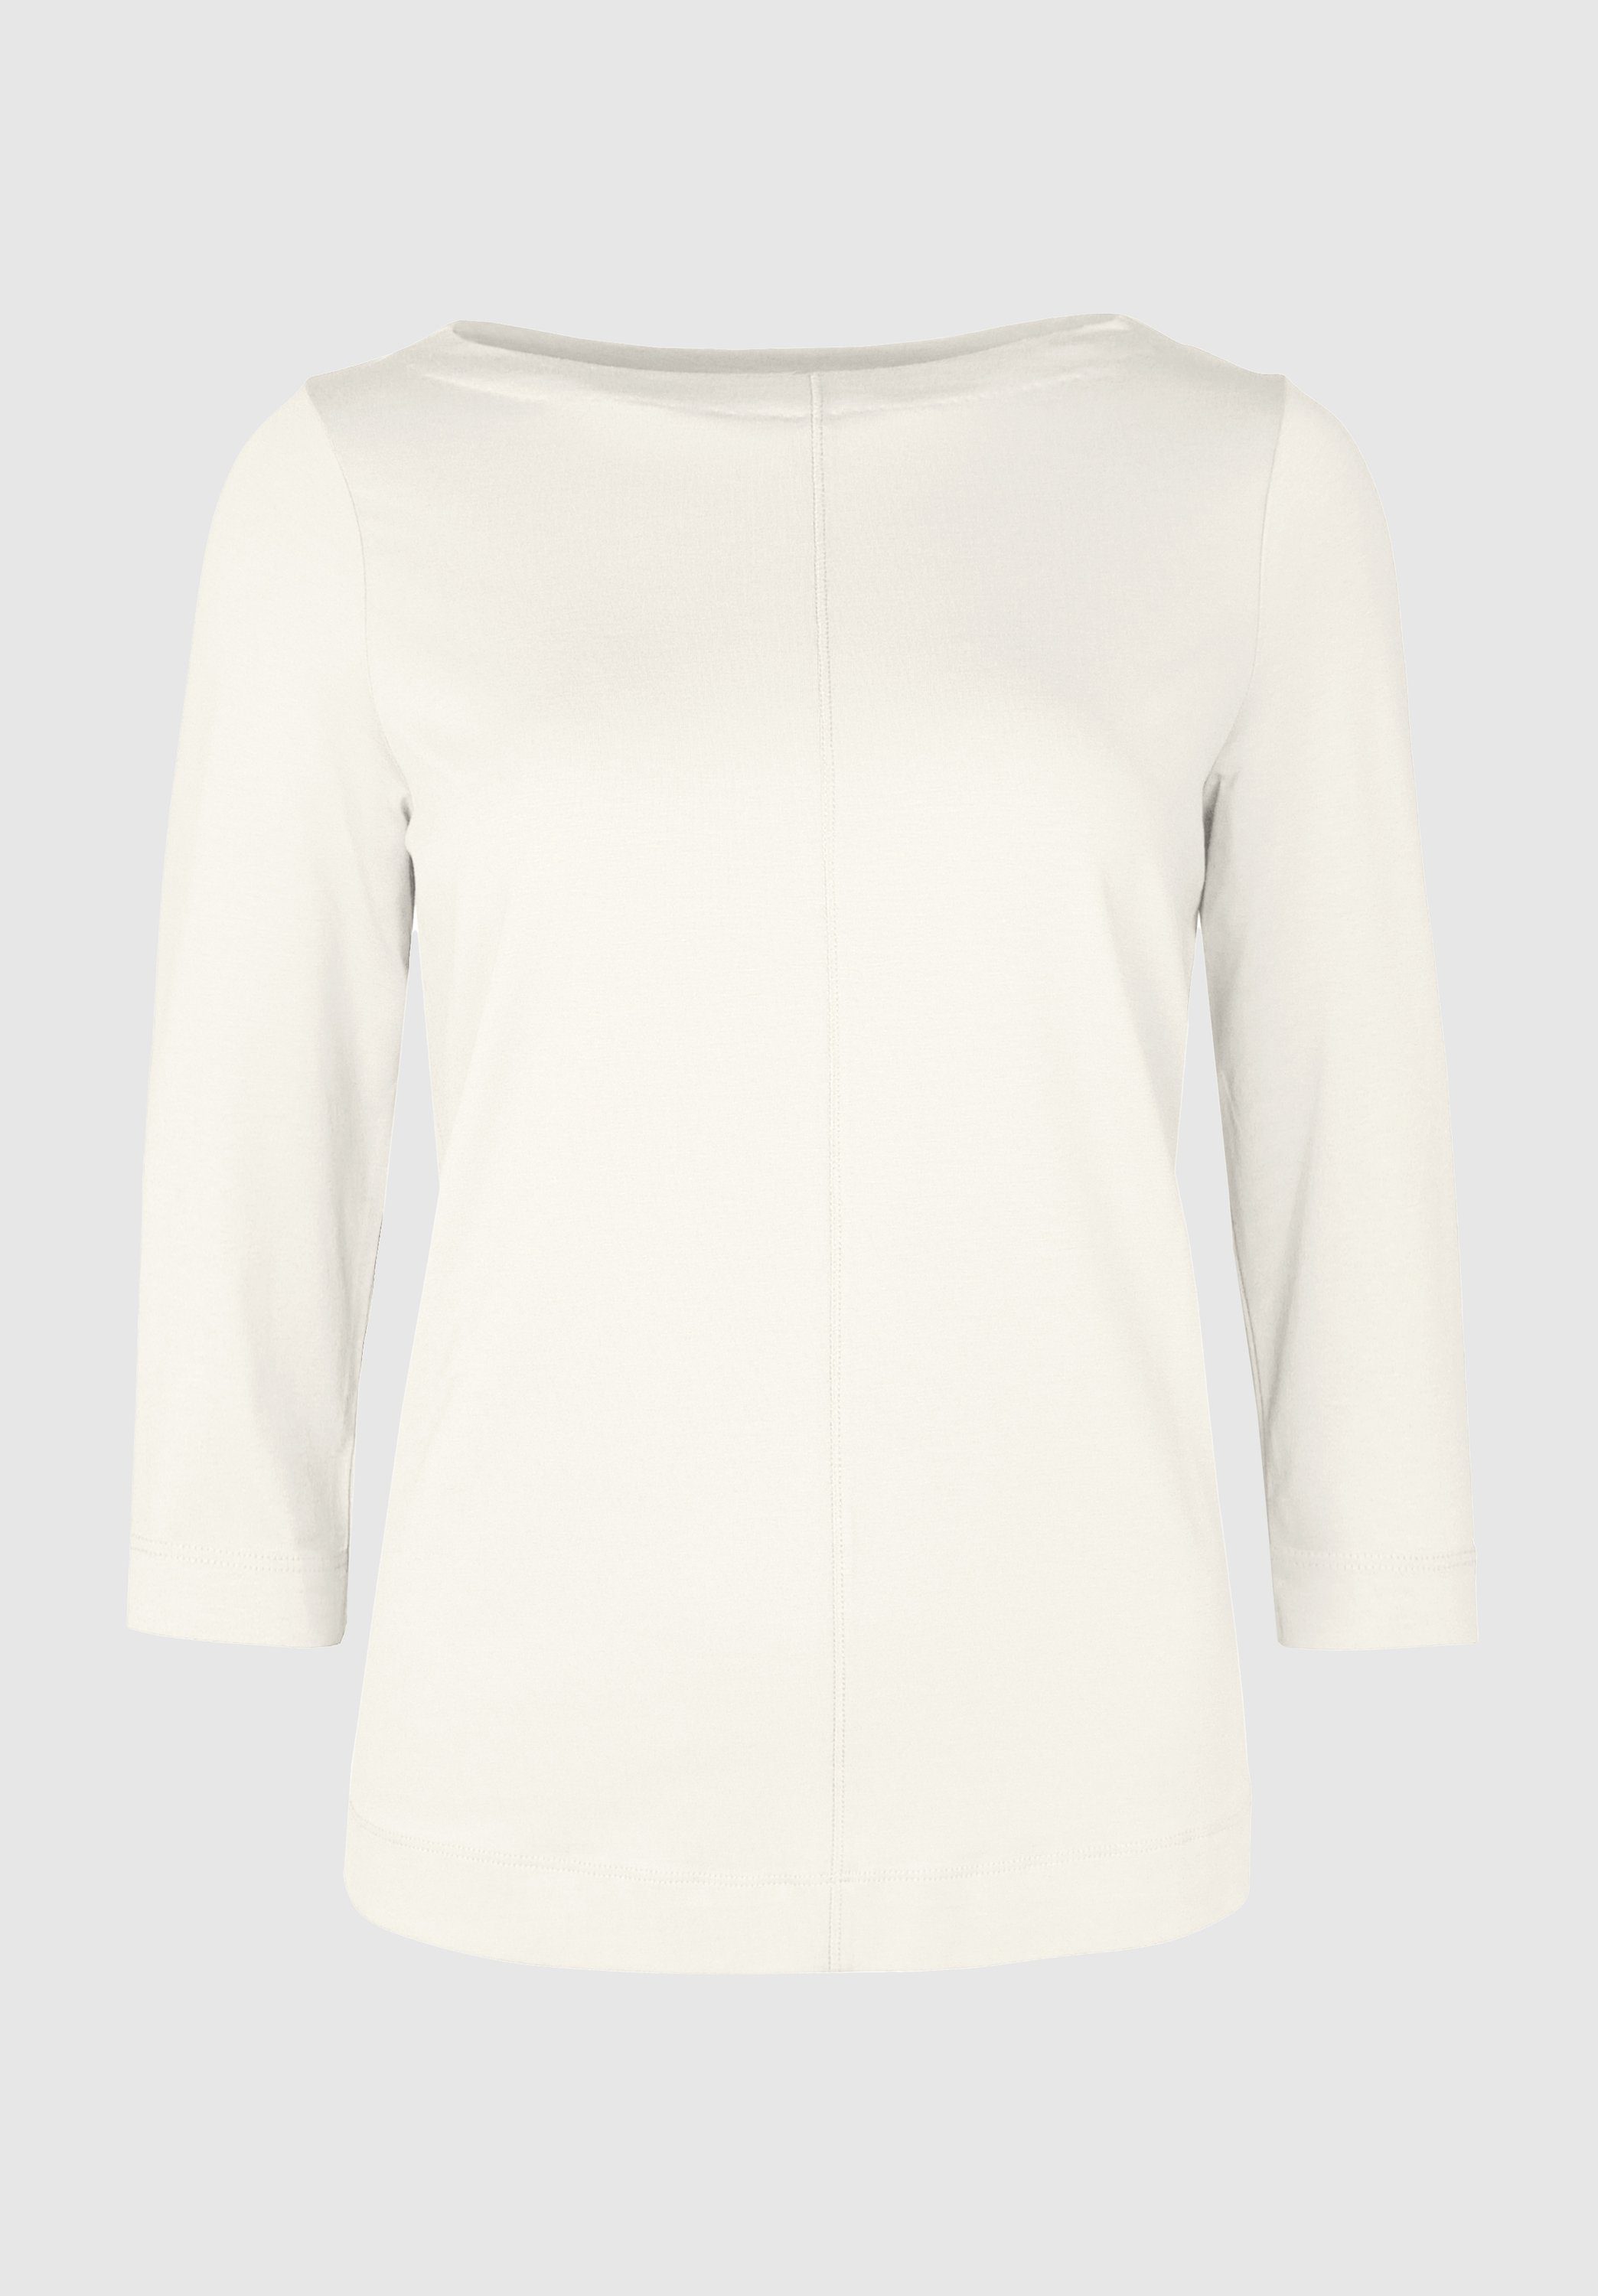 bianca 3/4-Arm-Shirt DIELLA in modernem und Trendfarben ivory angesagten Look